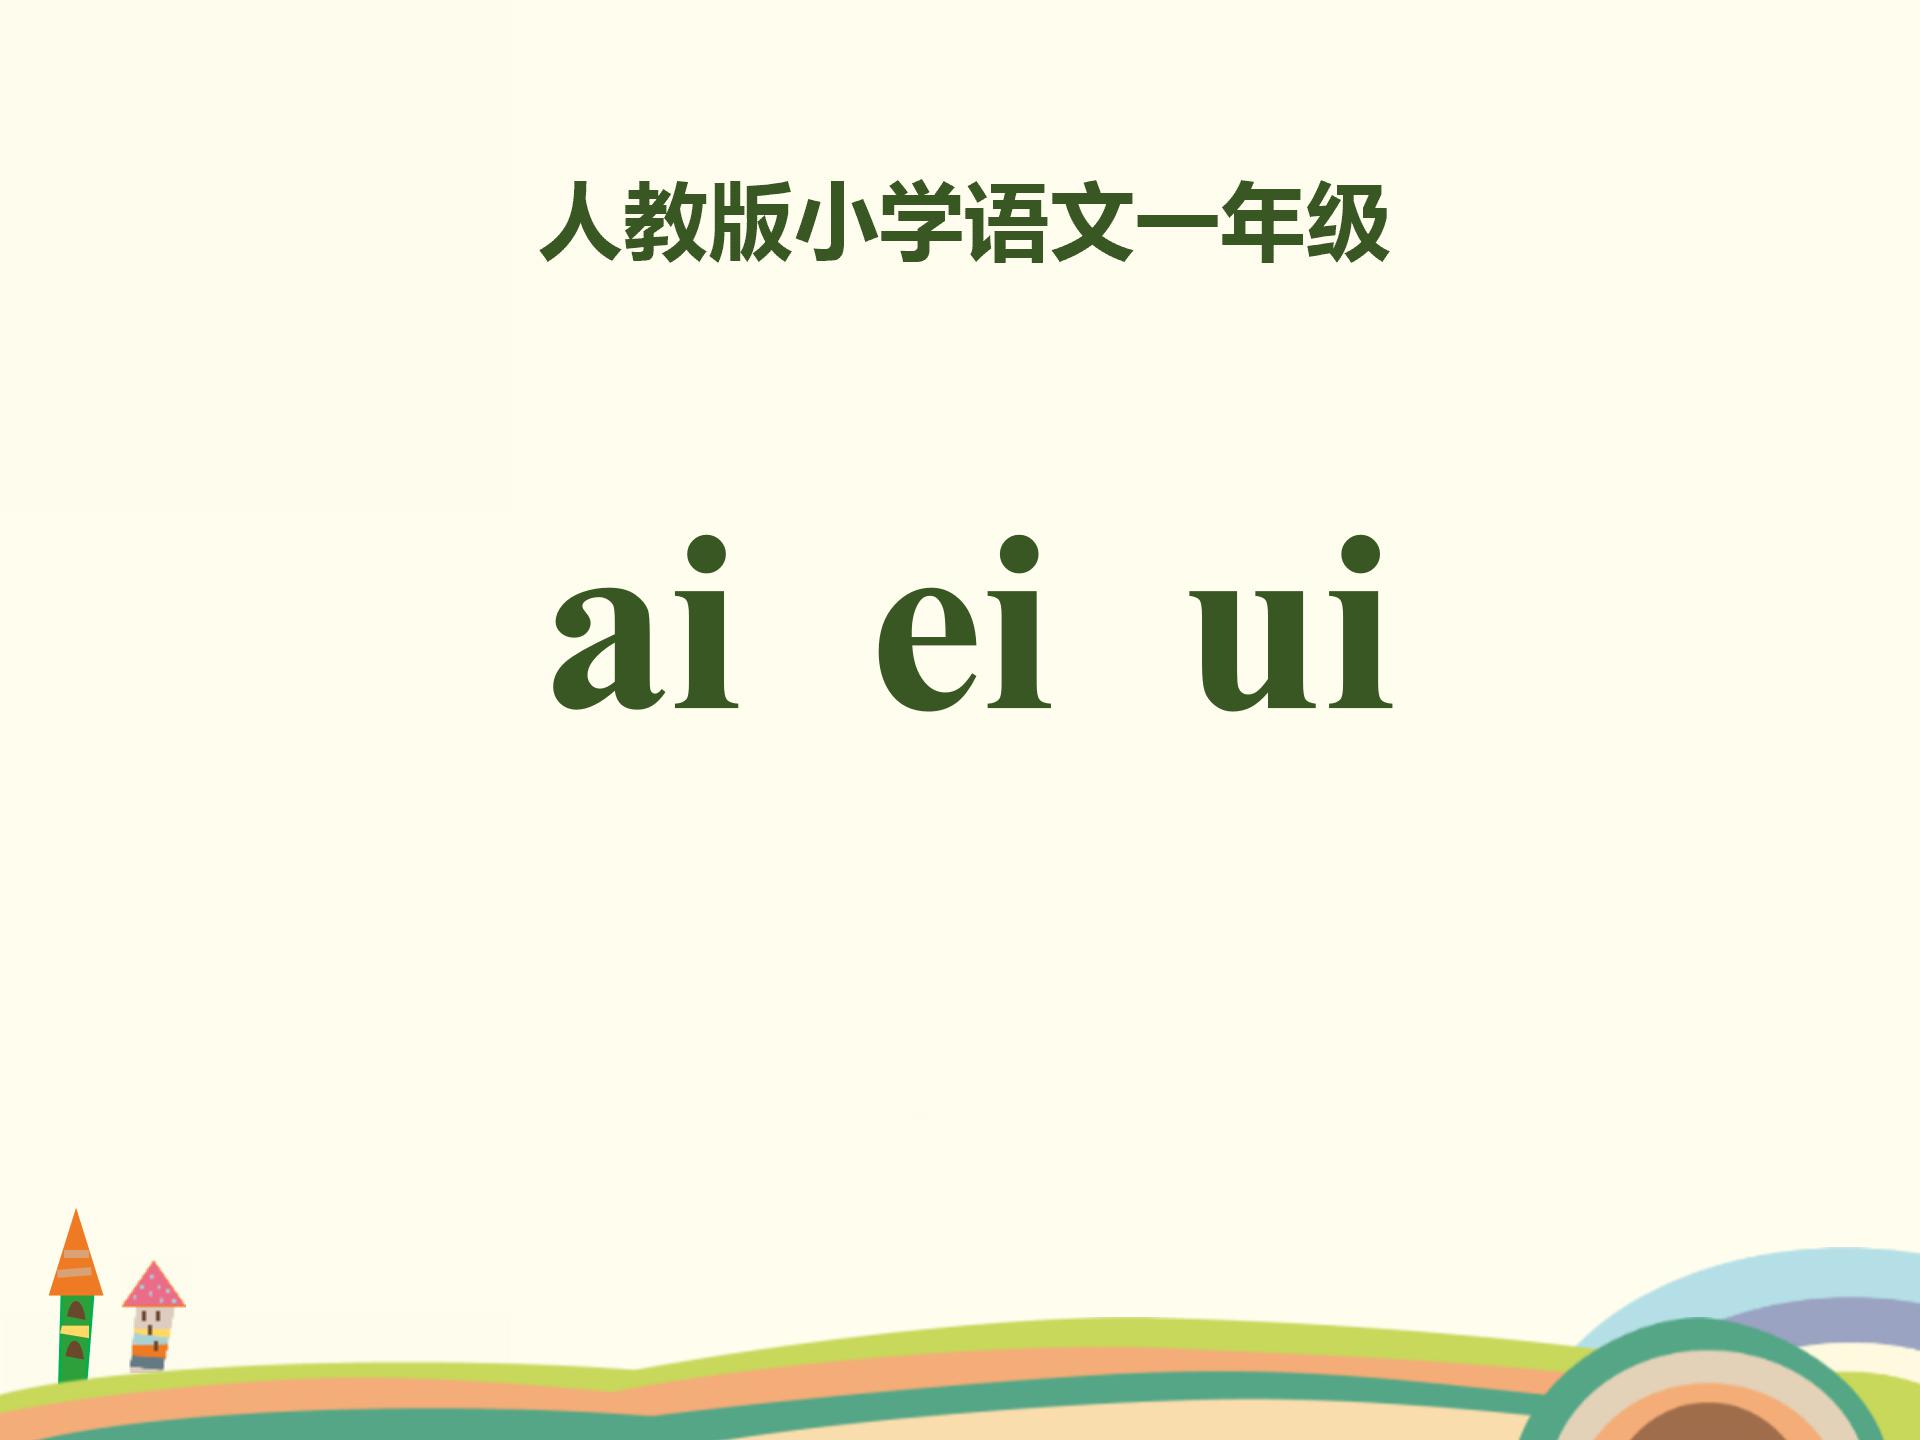 小学语文课件《aieiui》汉语拼音PPT模板